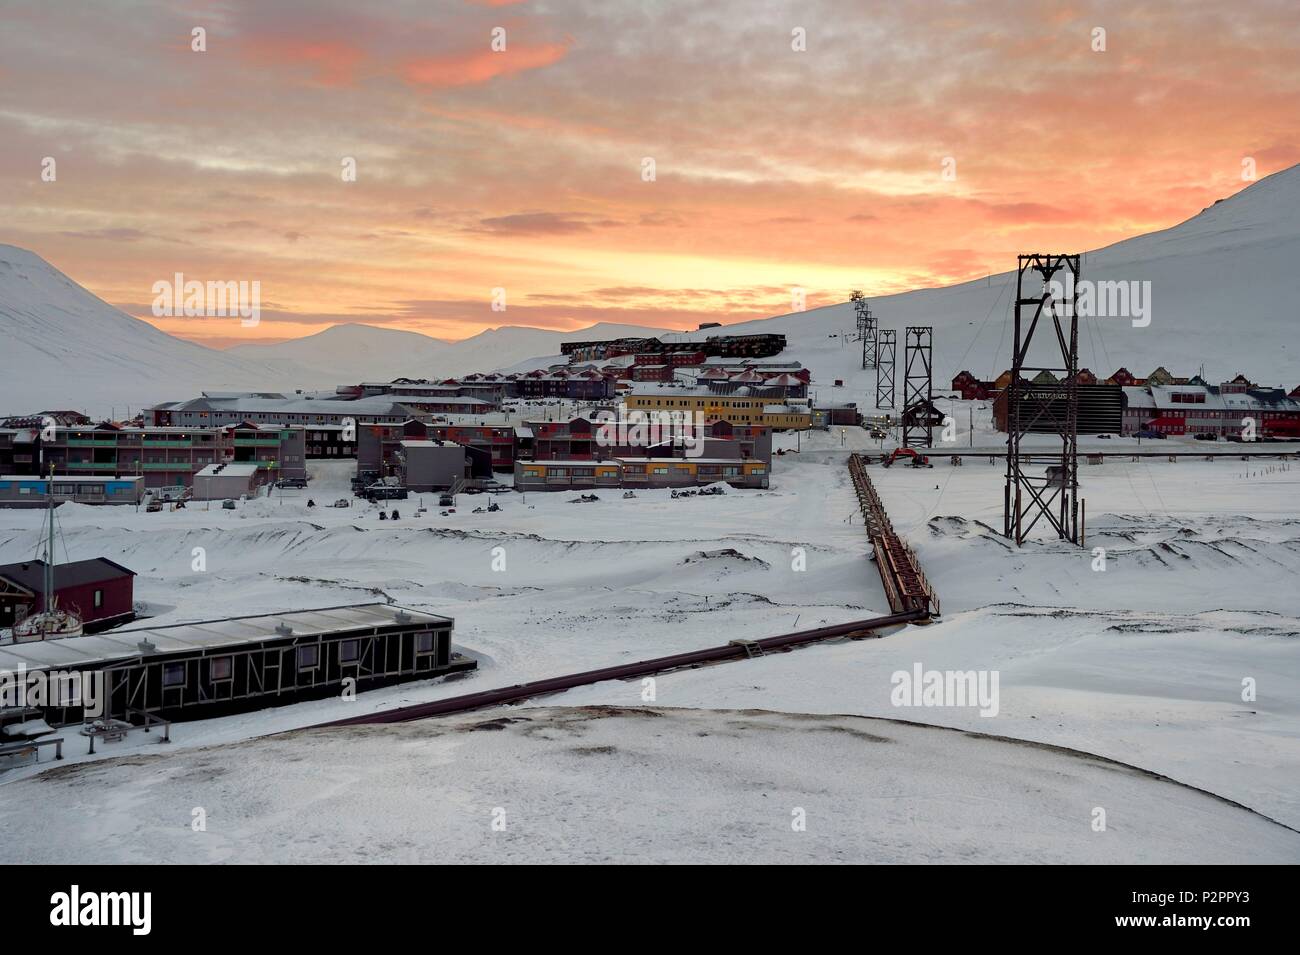 La Norvège, Svalbard, Spitzberg, Longyearbyen, le chauffage thermique des tuyaux qui traversent Longyearbyen au-dessus du sol en raison du pergélisol et ex-headframes transportant du charbon Banque D'Images